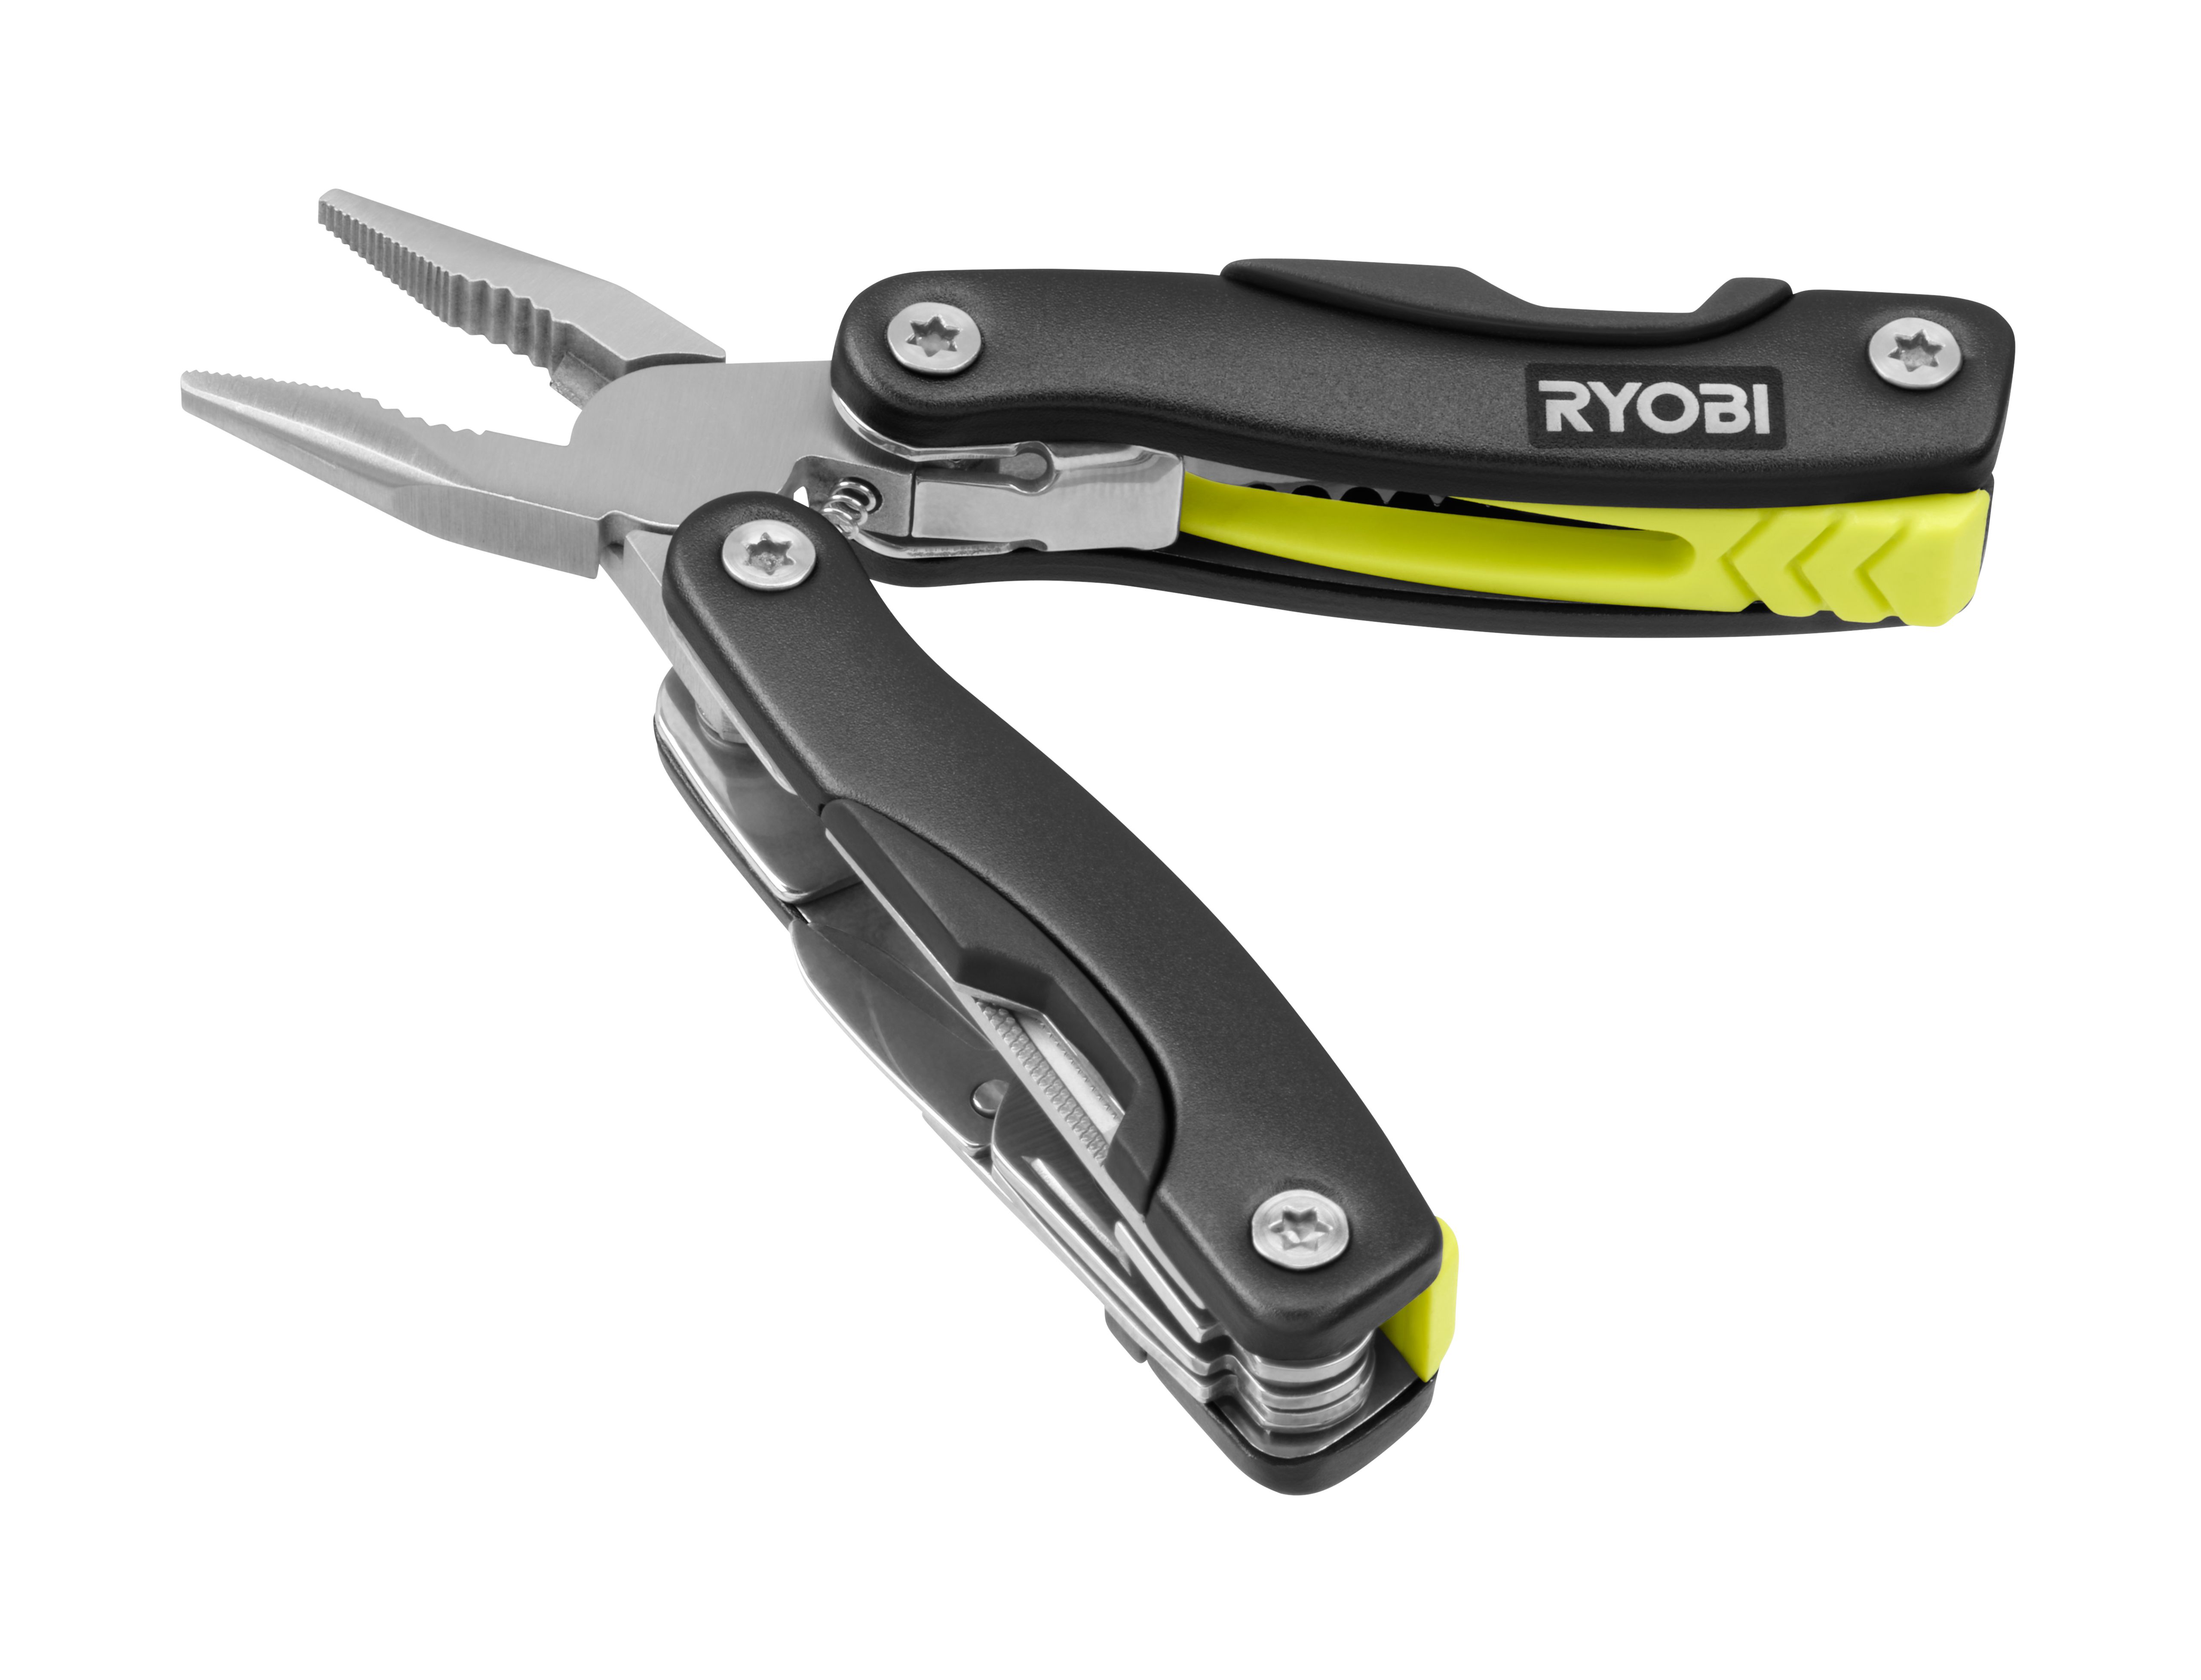 14-in-1 Multi-Tool - RYOBI Tools